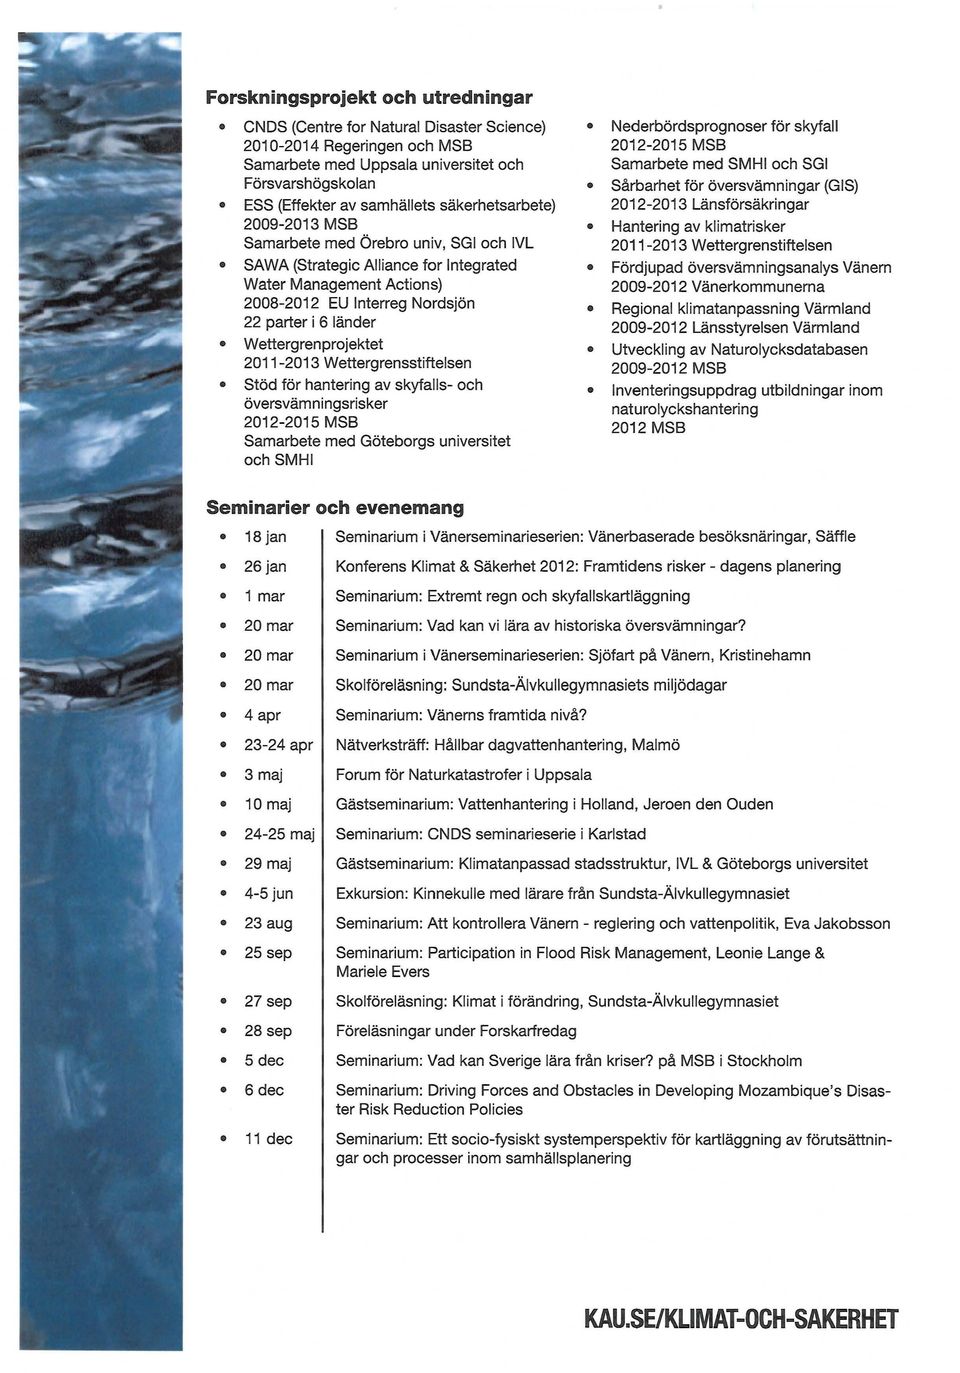 med Örebro univ, SGI och IVL 2011-2013 Wettergrenstiftelsen SAWA (Strategic Alliance for Integrated Water Management Actions) 2008-2012 EU Interreg Nordsjön Fördjupad översvämningsanalys Vänern